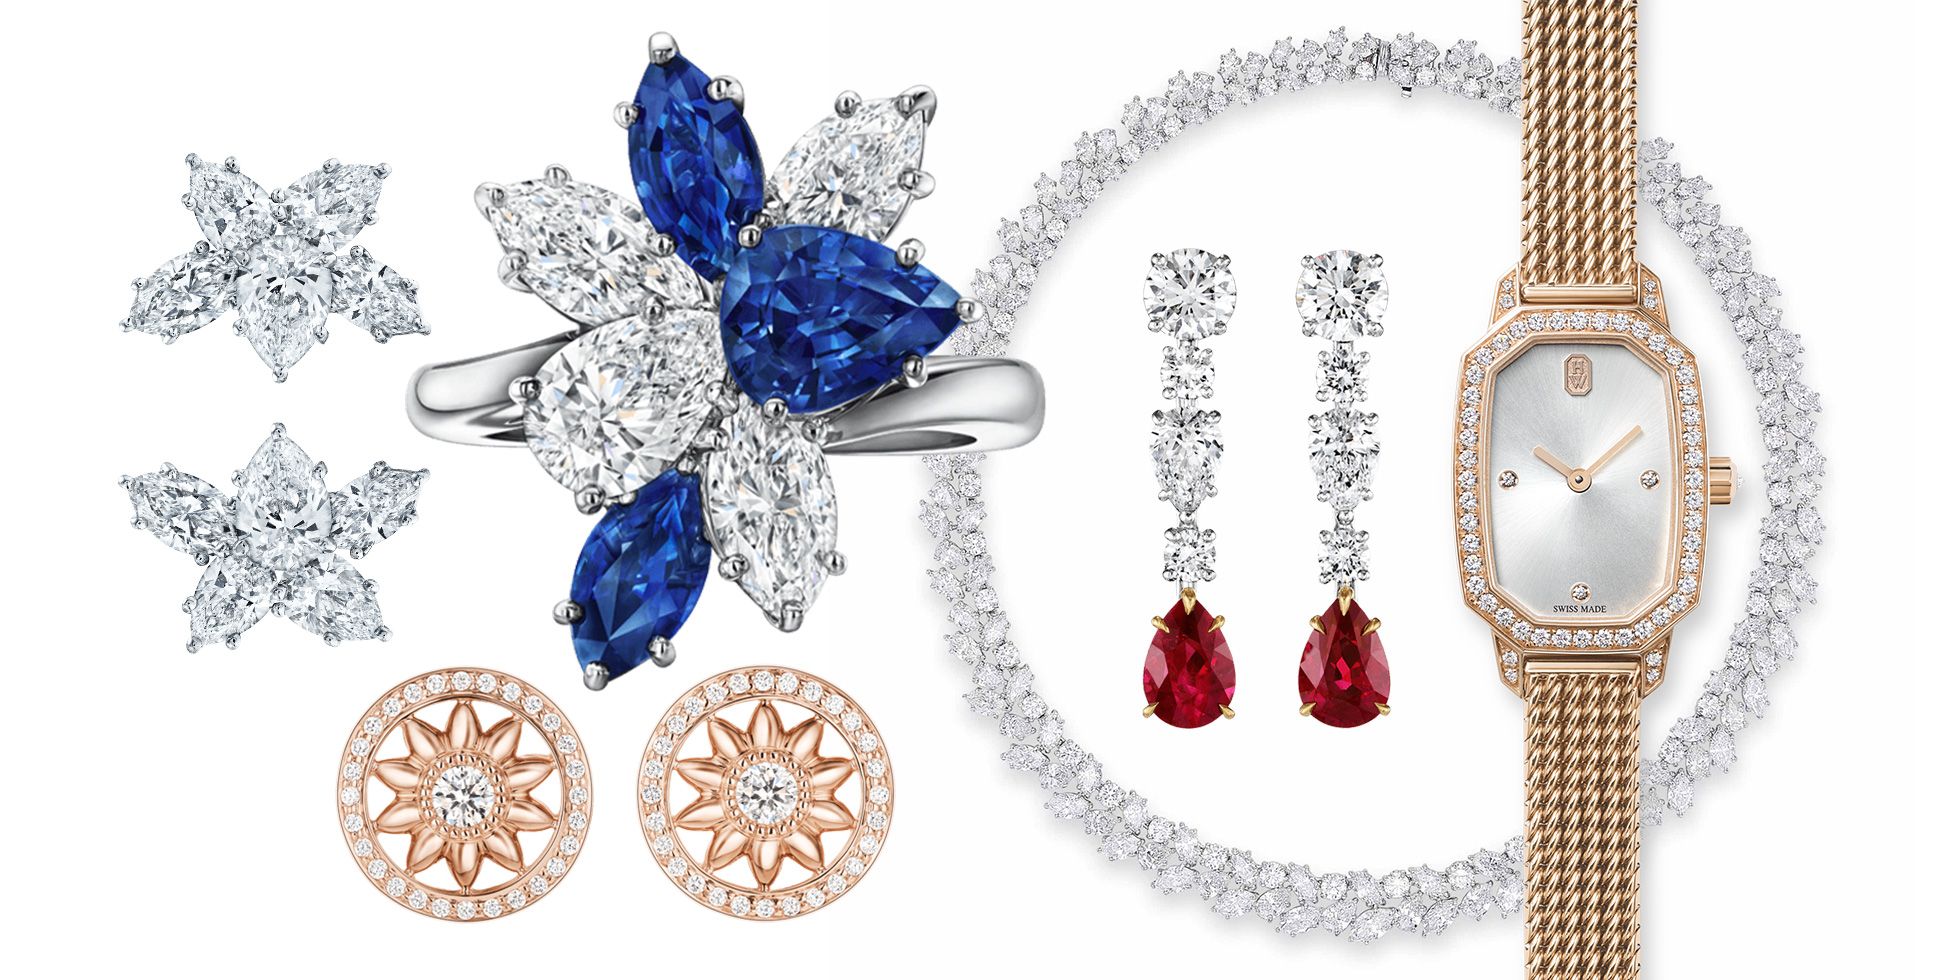 PAIR OF DIAMOND EARRINGS HARRY WINSTON  Jewels Online  Jewellery   Sothebys